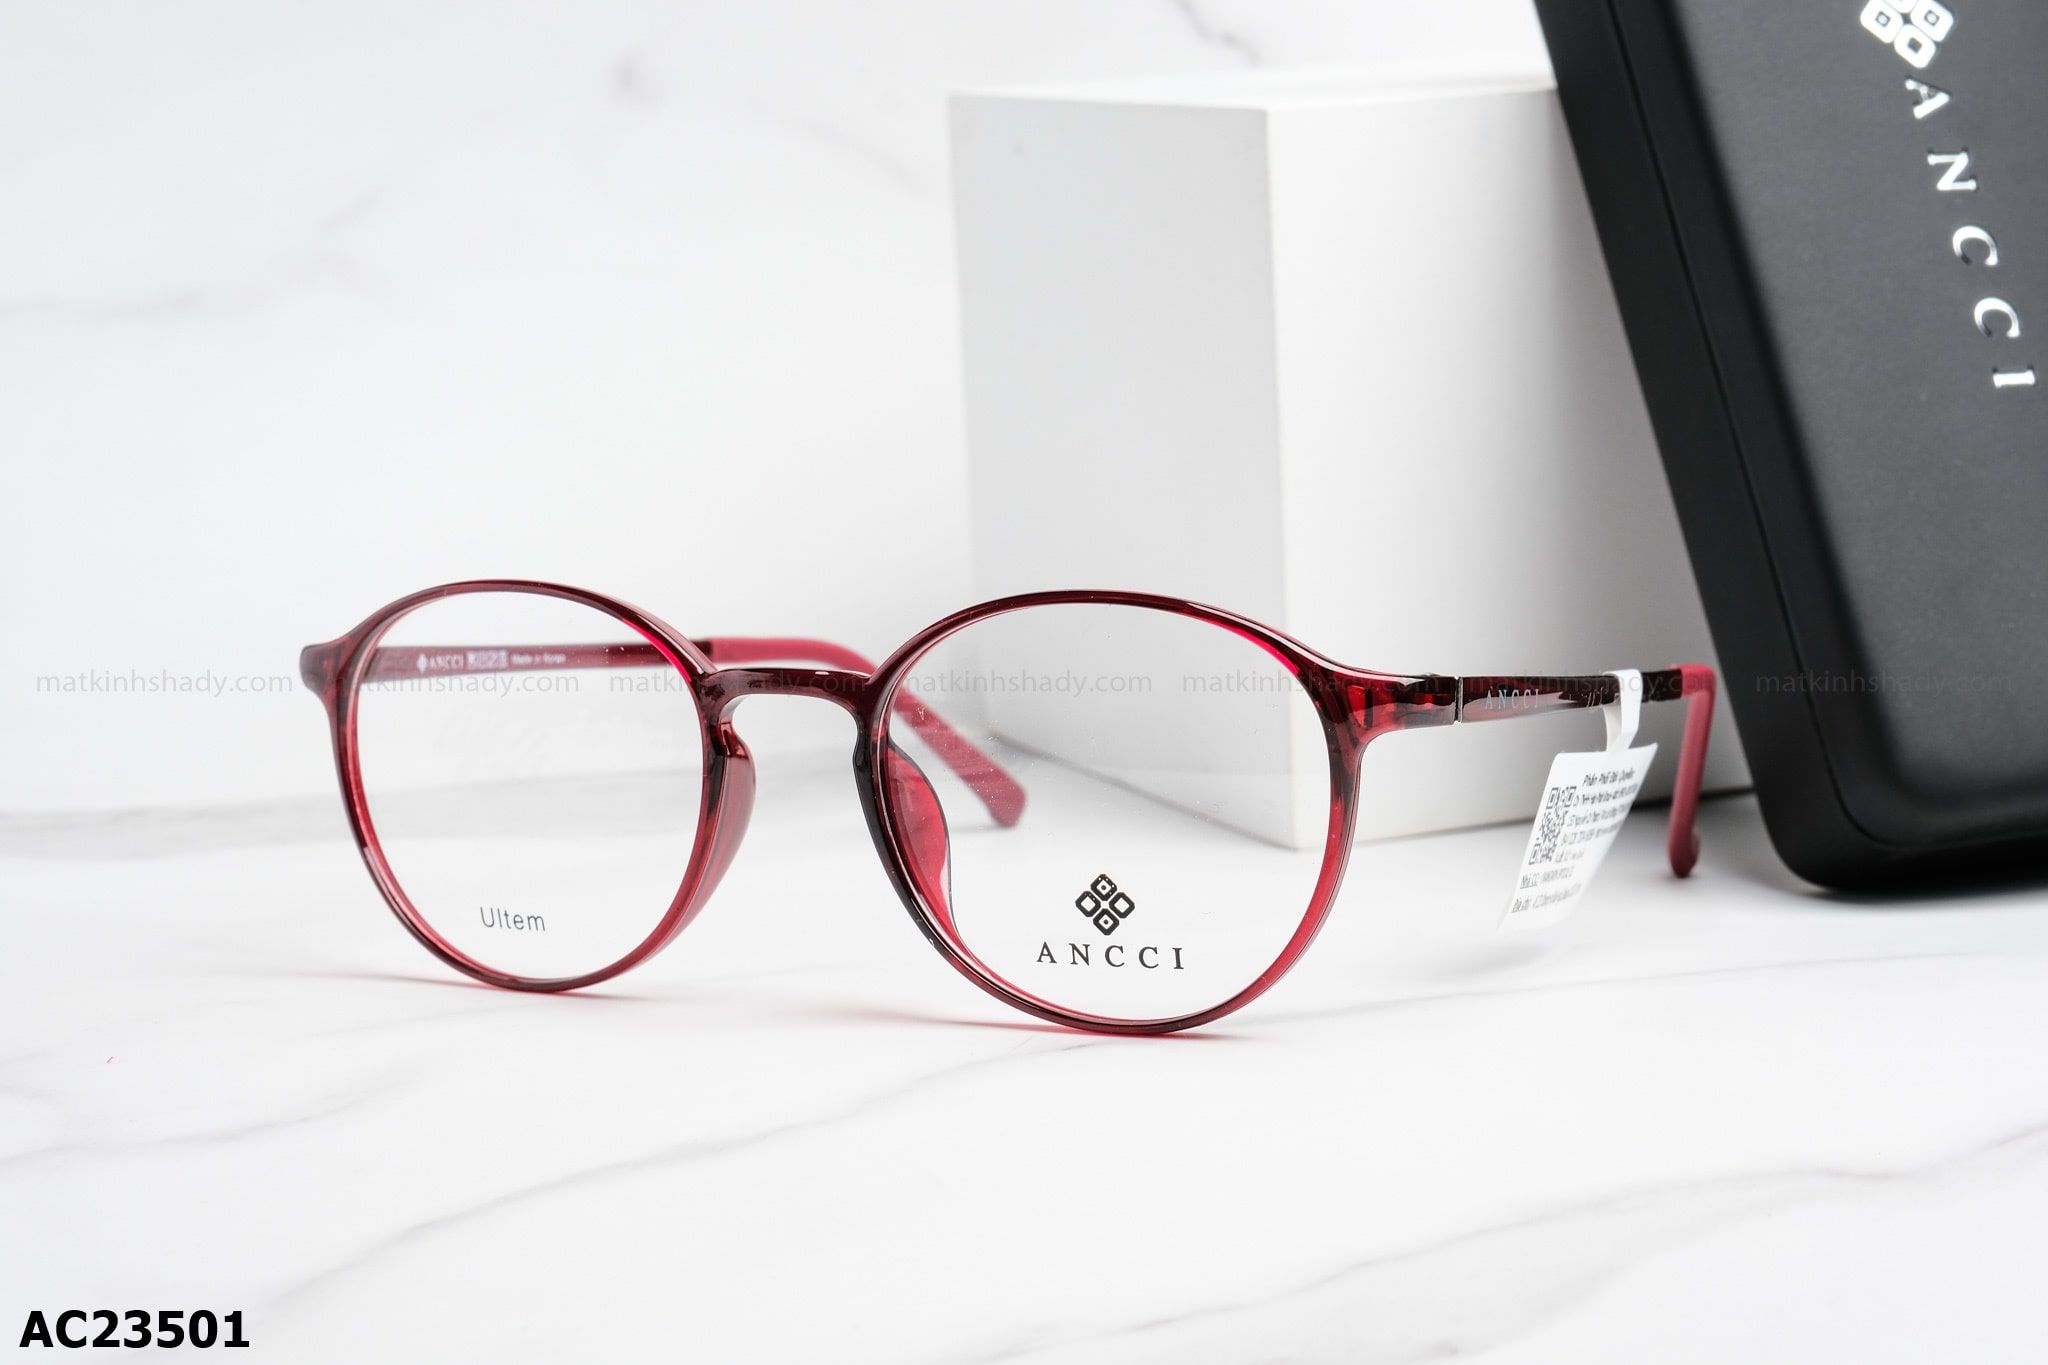  ANCCI Eyewear - Glasses - AC23501 